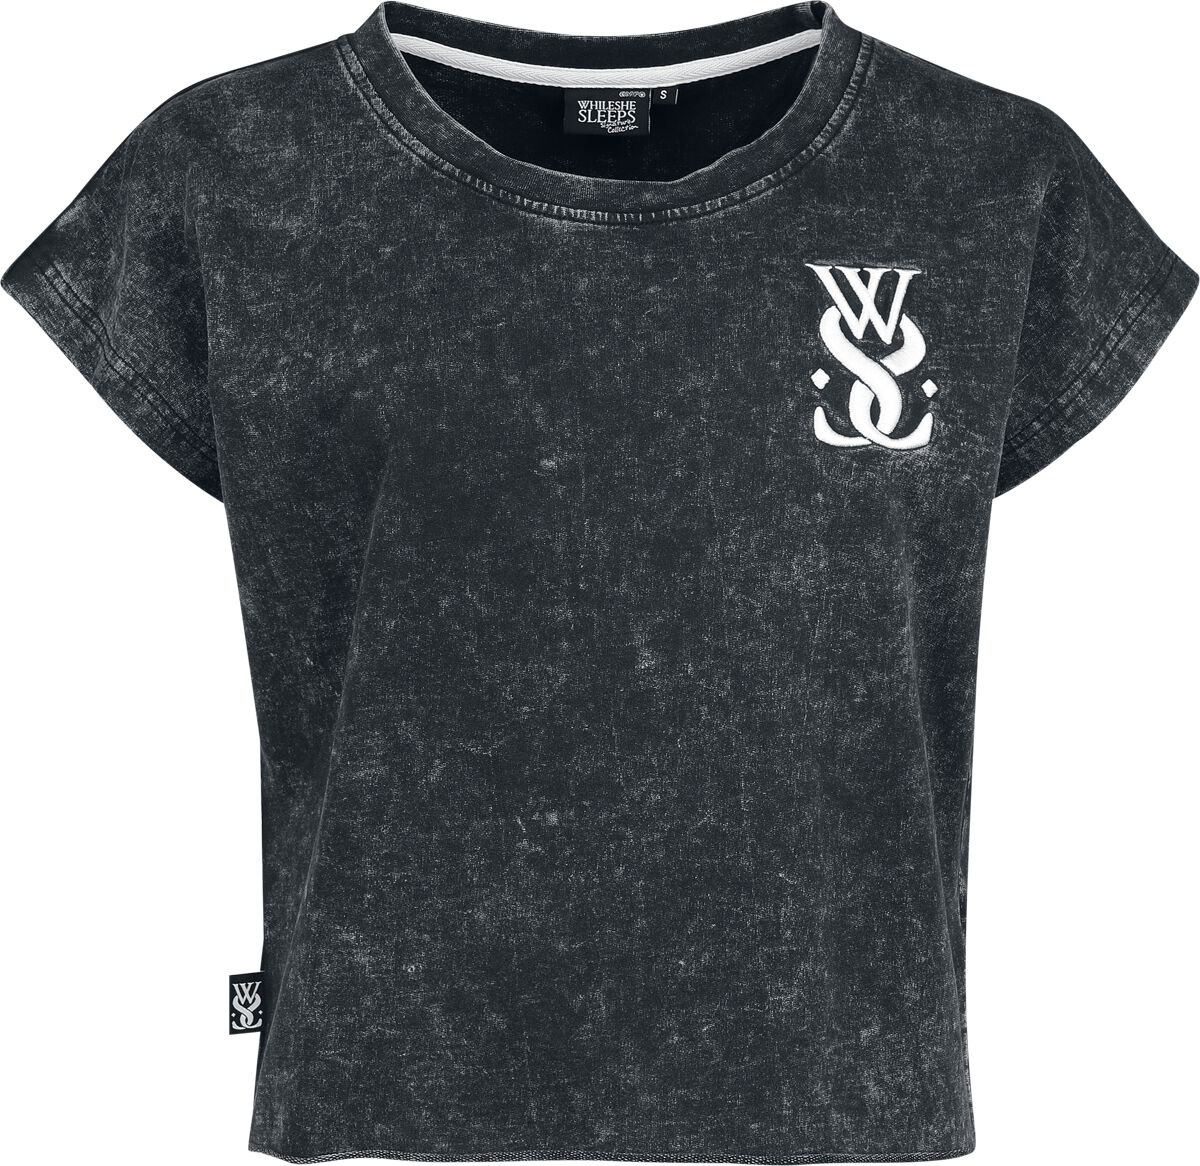 While She Sleeps T-Shirt - EMP Signature Collection - XS bis 3XL - für Damen - Größe XXL - grau  - EMP exklusives Merchandise!